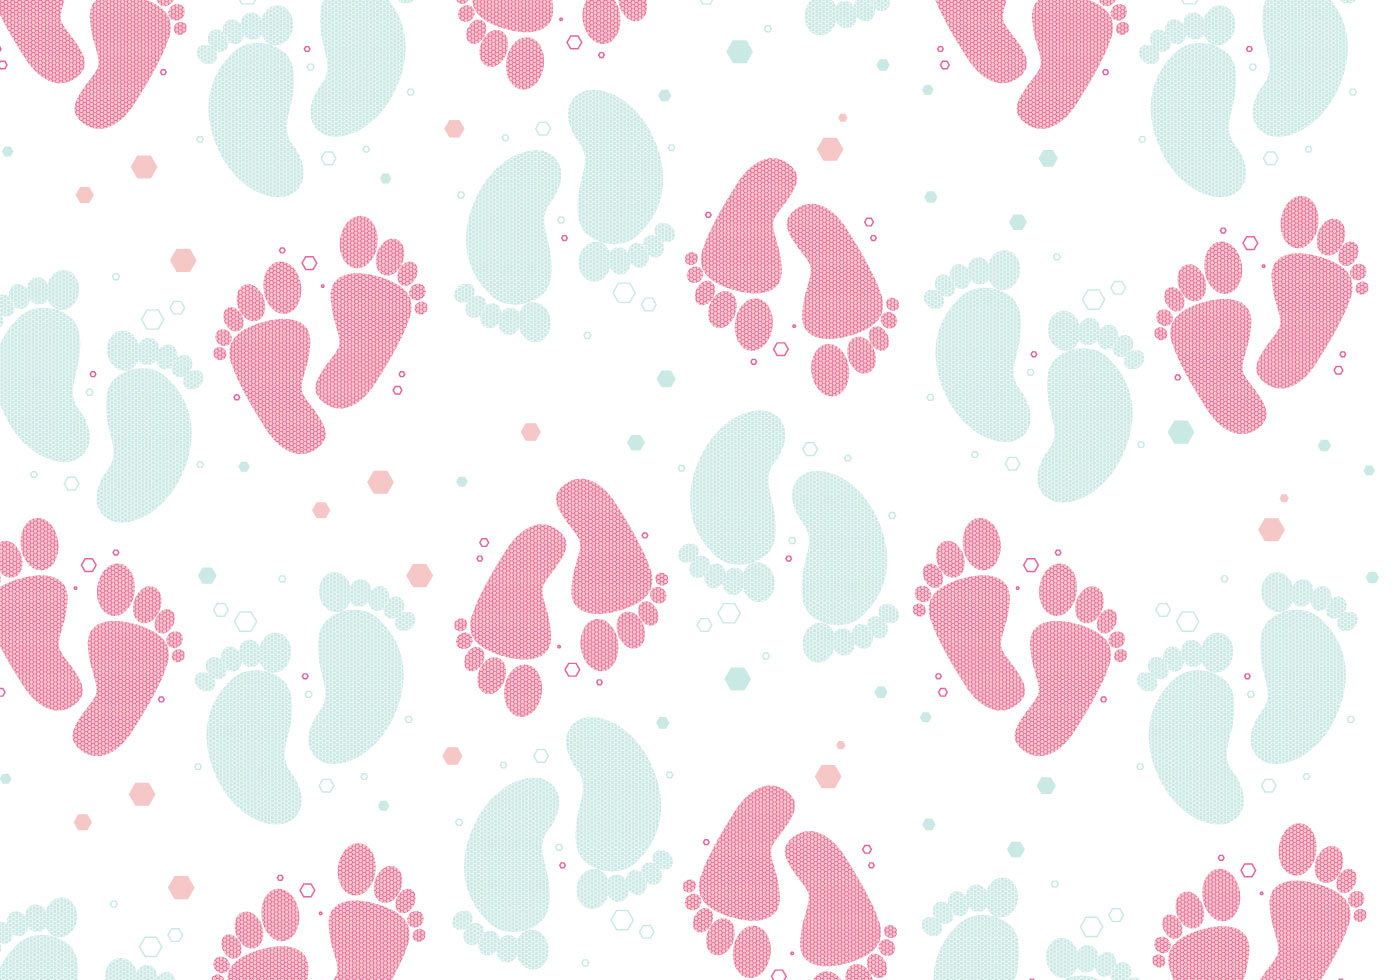 Download Baby Footprint Vector 128528 - Download Free Vectors ...